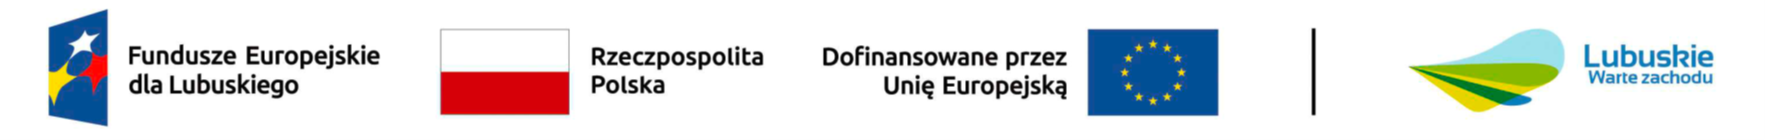 Logotypy Fundusze europejskie, Rzeczpospolita Polska, Dofinansowane przez Unię Europejską